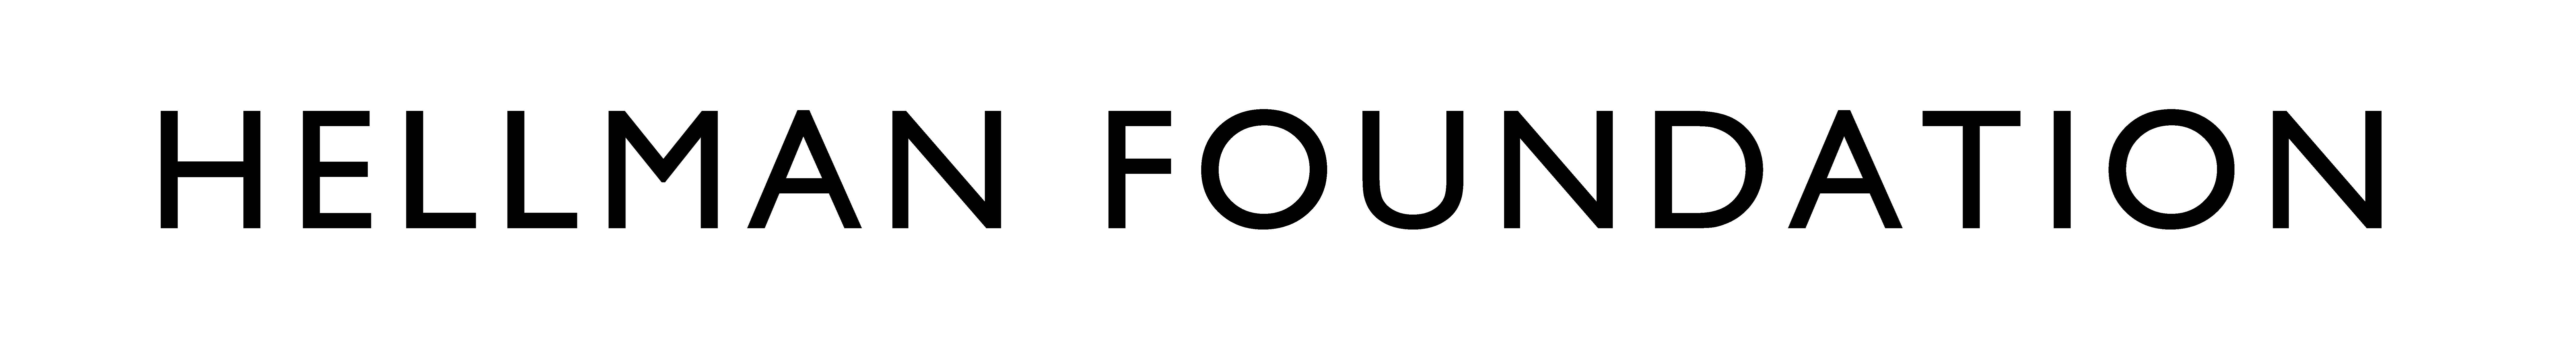 Hellman-Foundation-logo